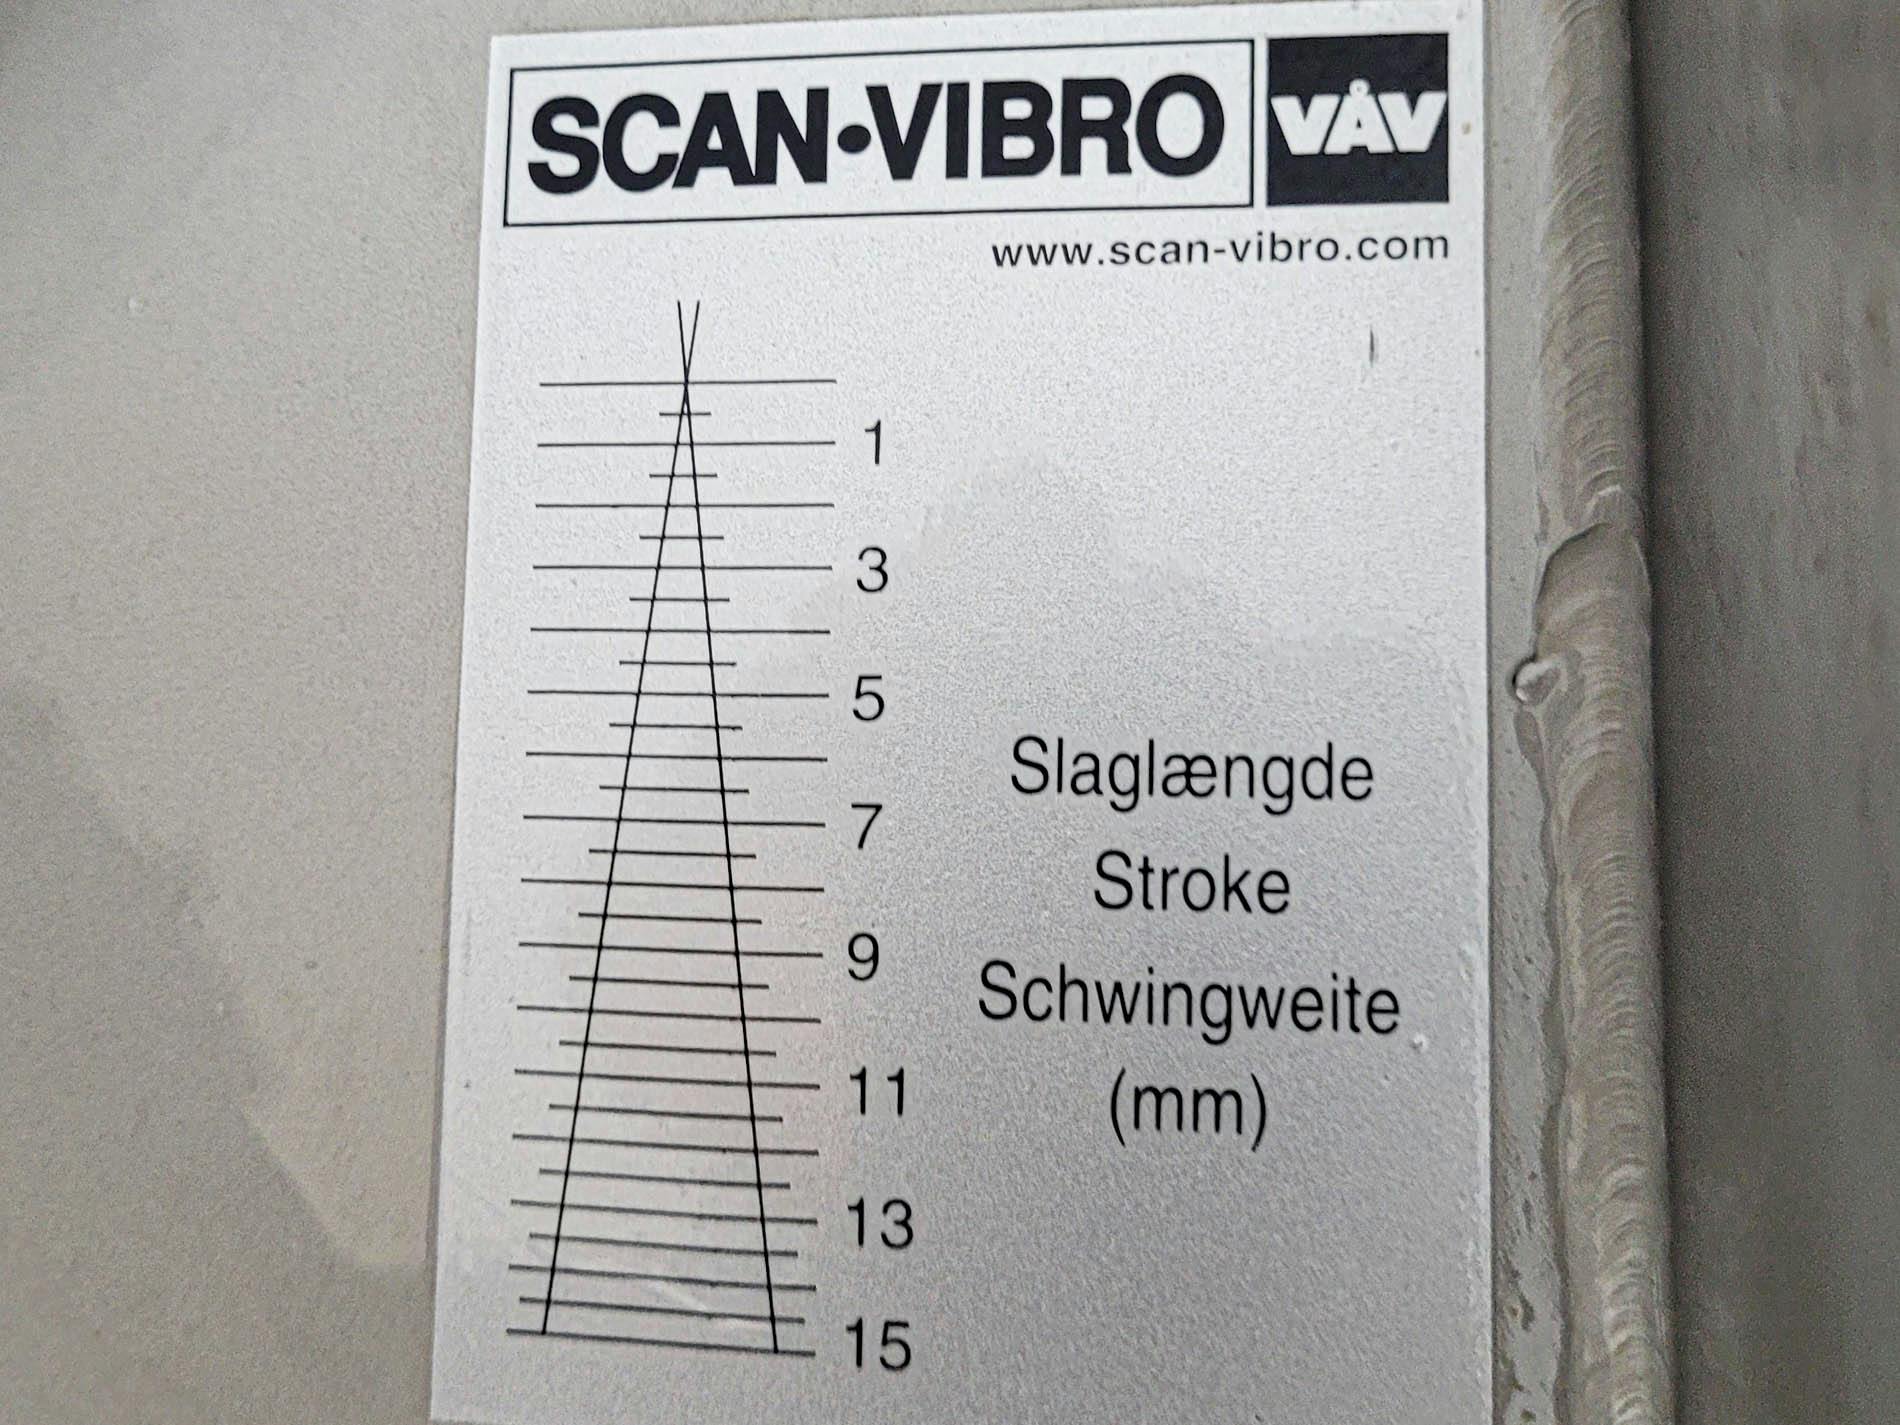 VAV Scan-Vibro TRS 300 x 1019 - Alimentador de vibrações - image 10